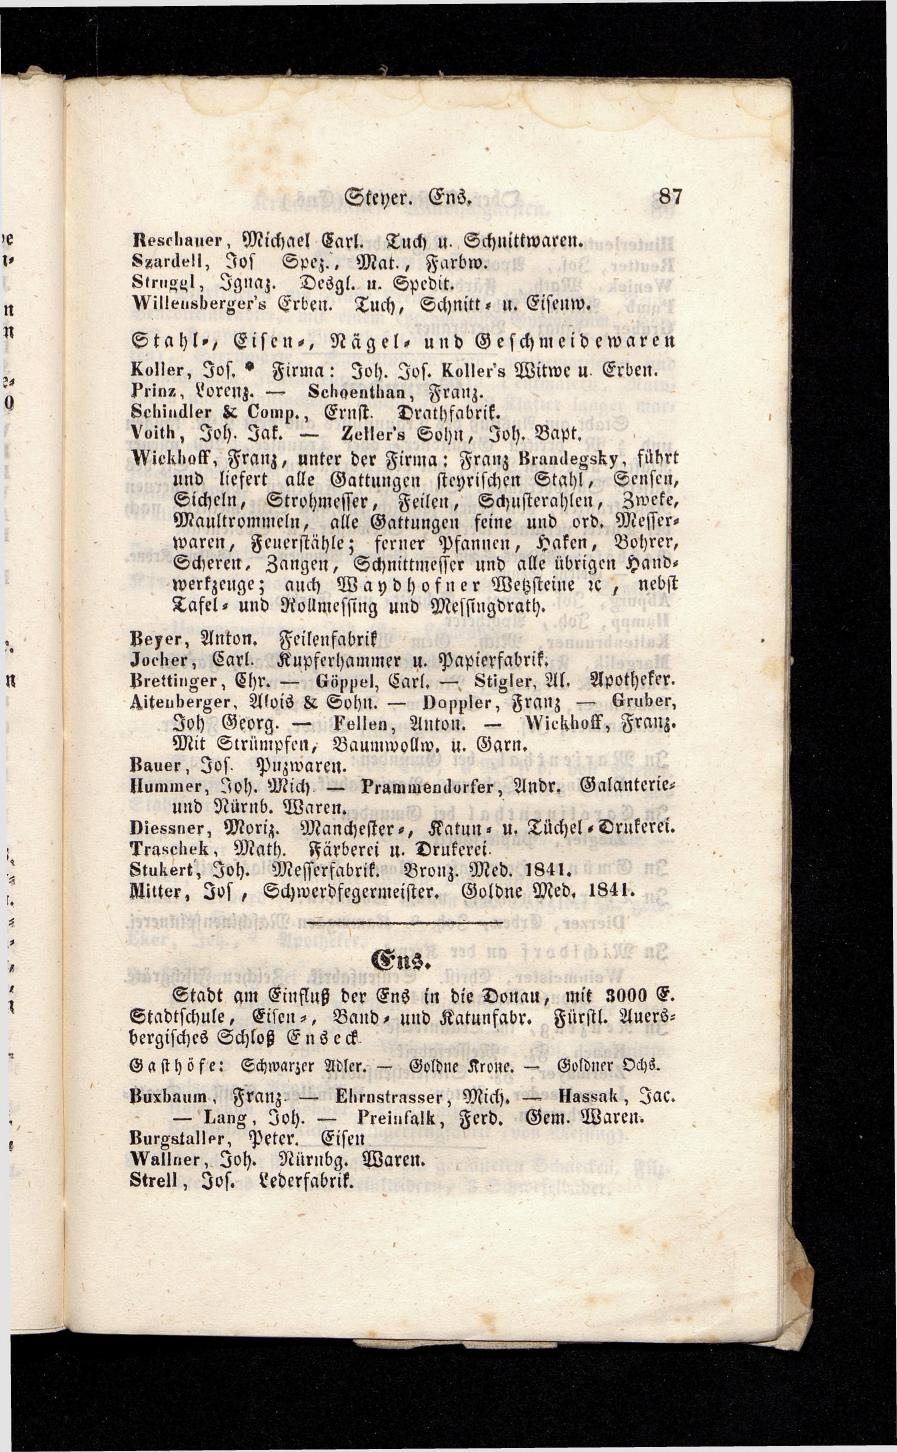 Grosses Adressbuch der Kaufleute. No. 13. Oesterreich ober u. unter der Enns 1844 - Seite 91